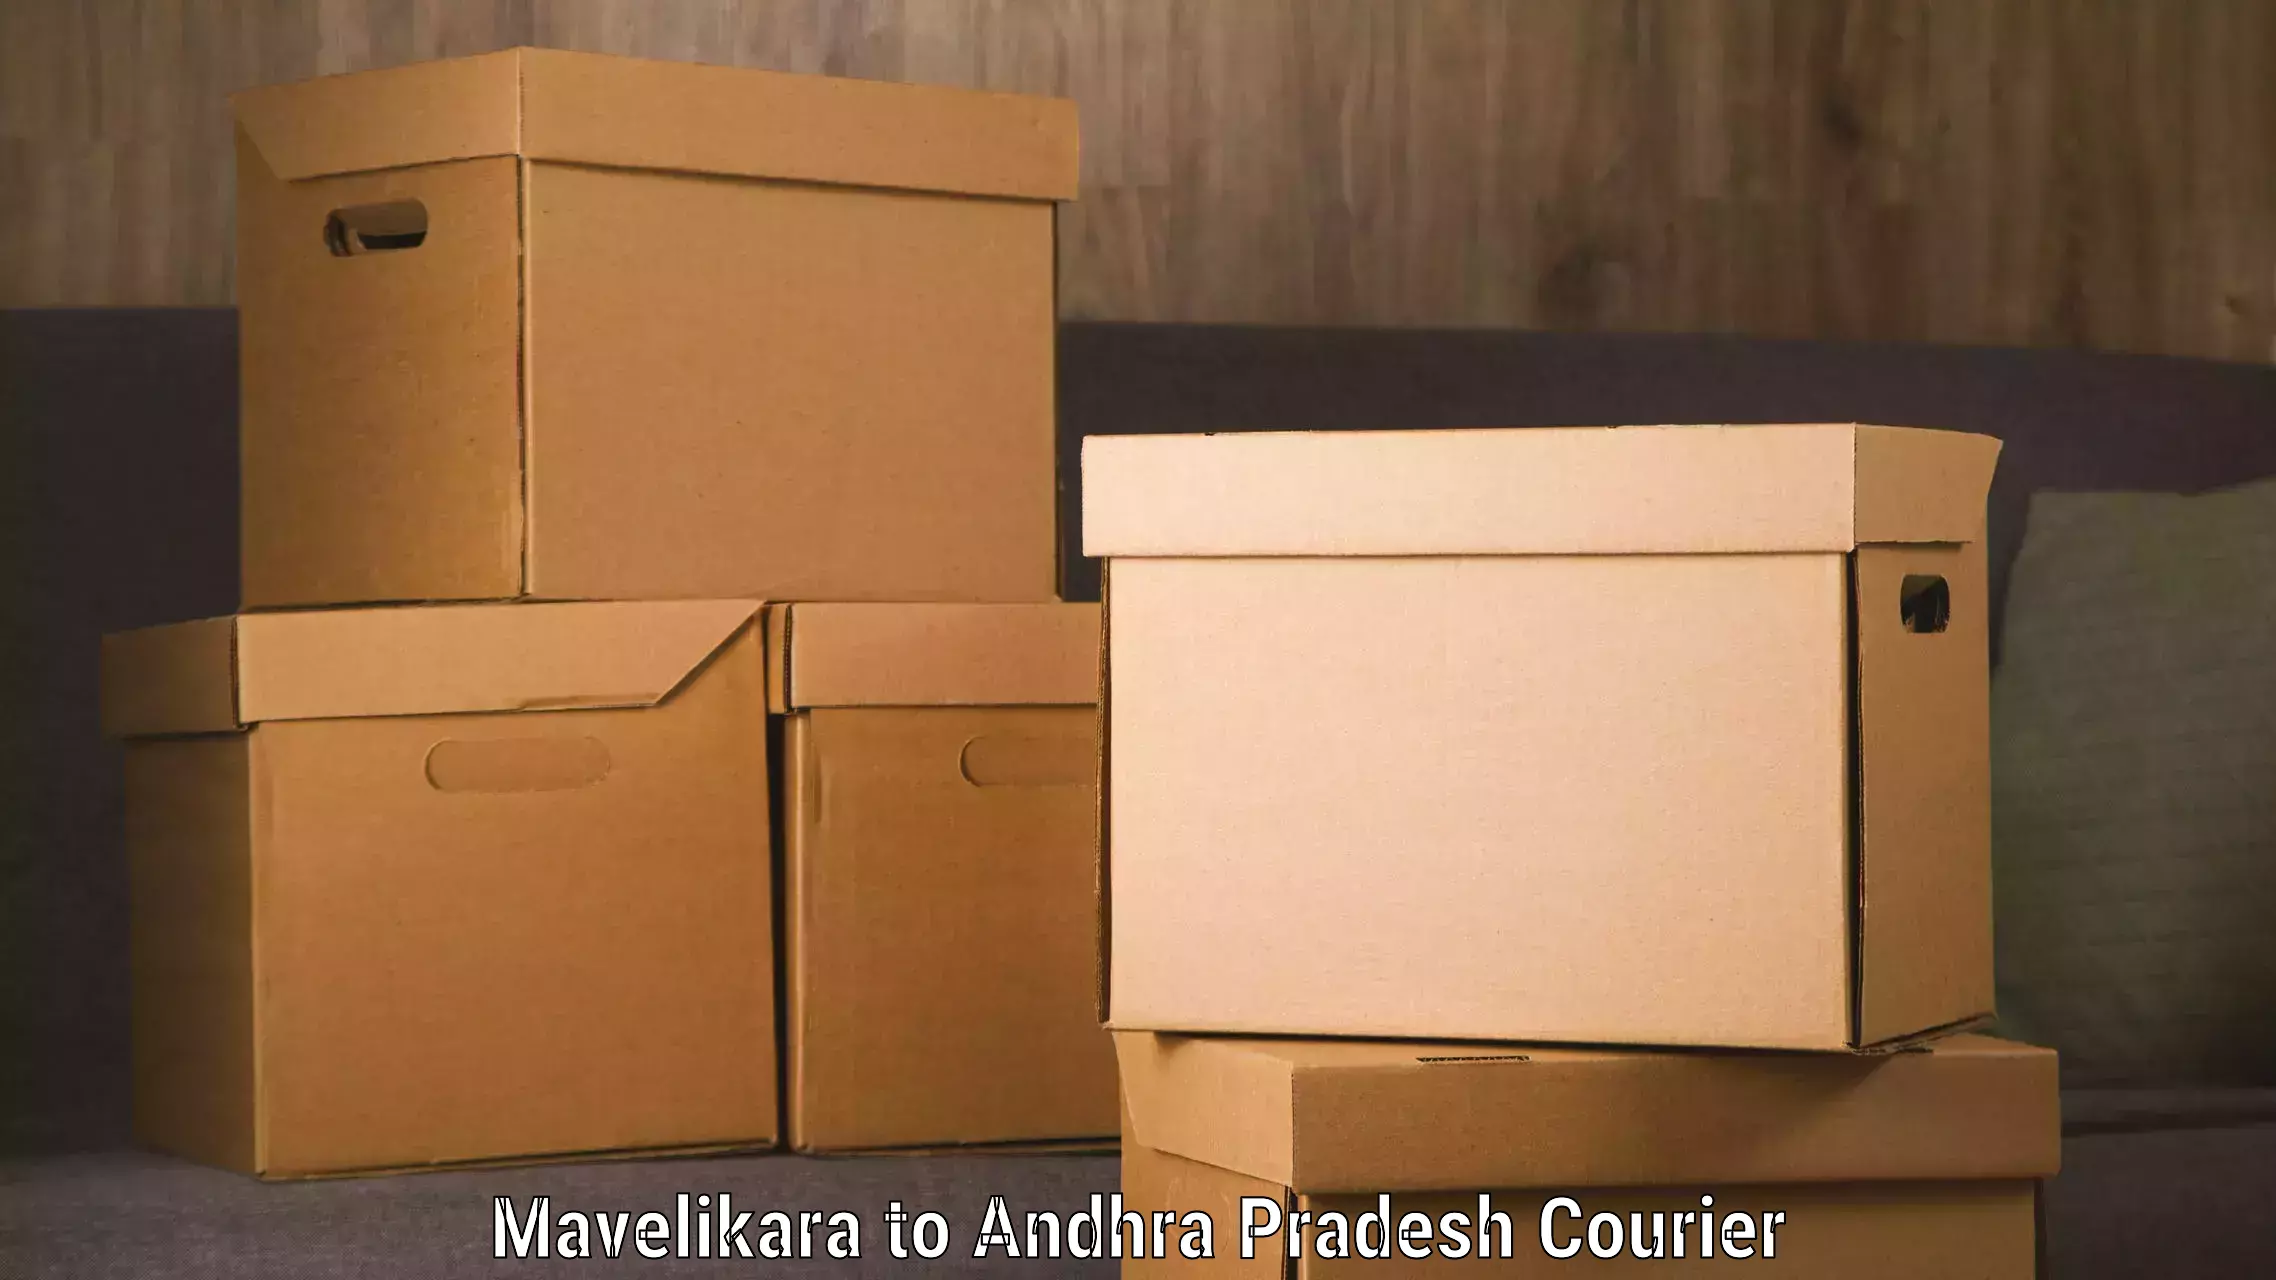 Courier service comparison in Mavelikara to Sarvepalli Nellore